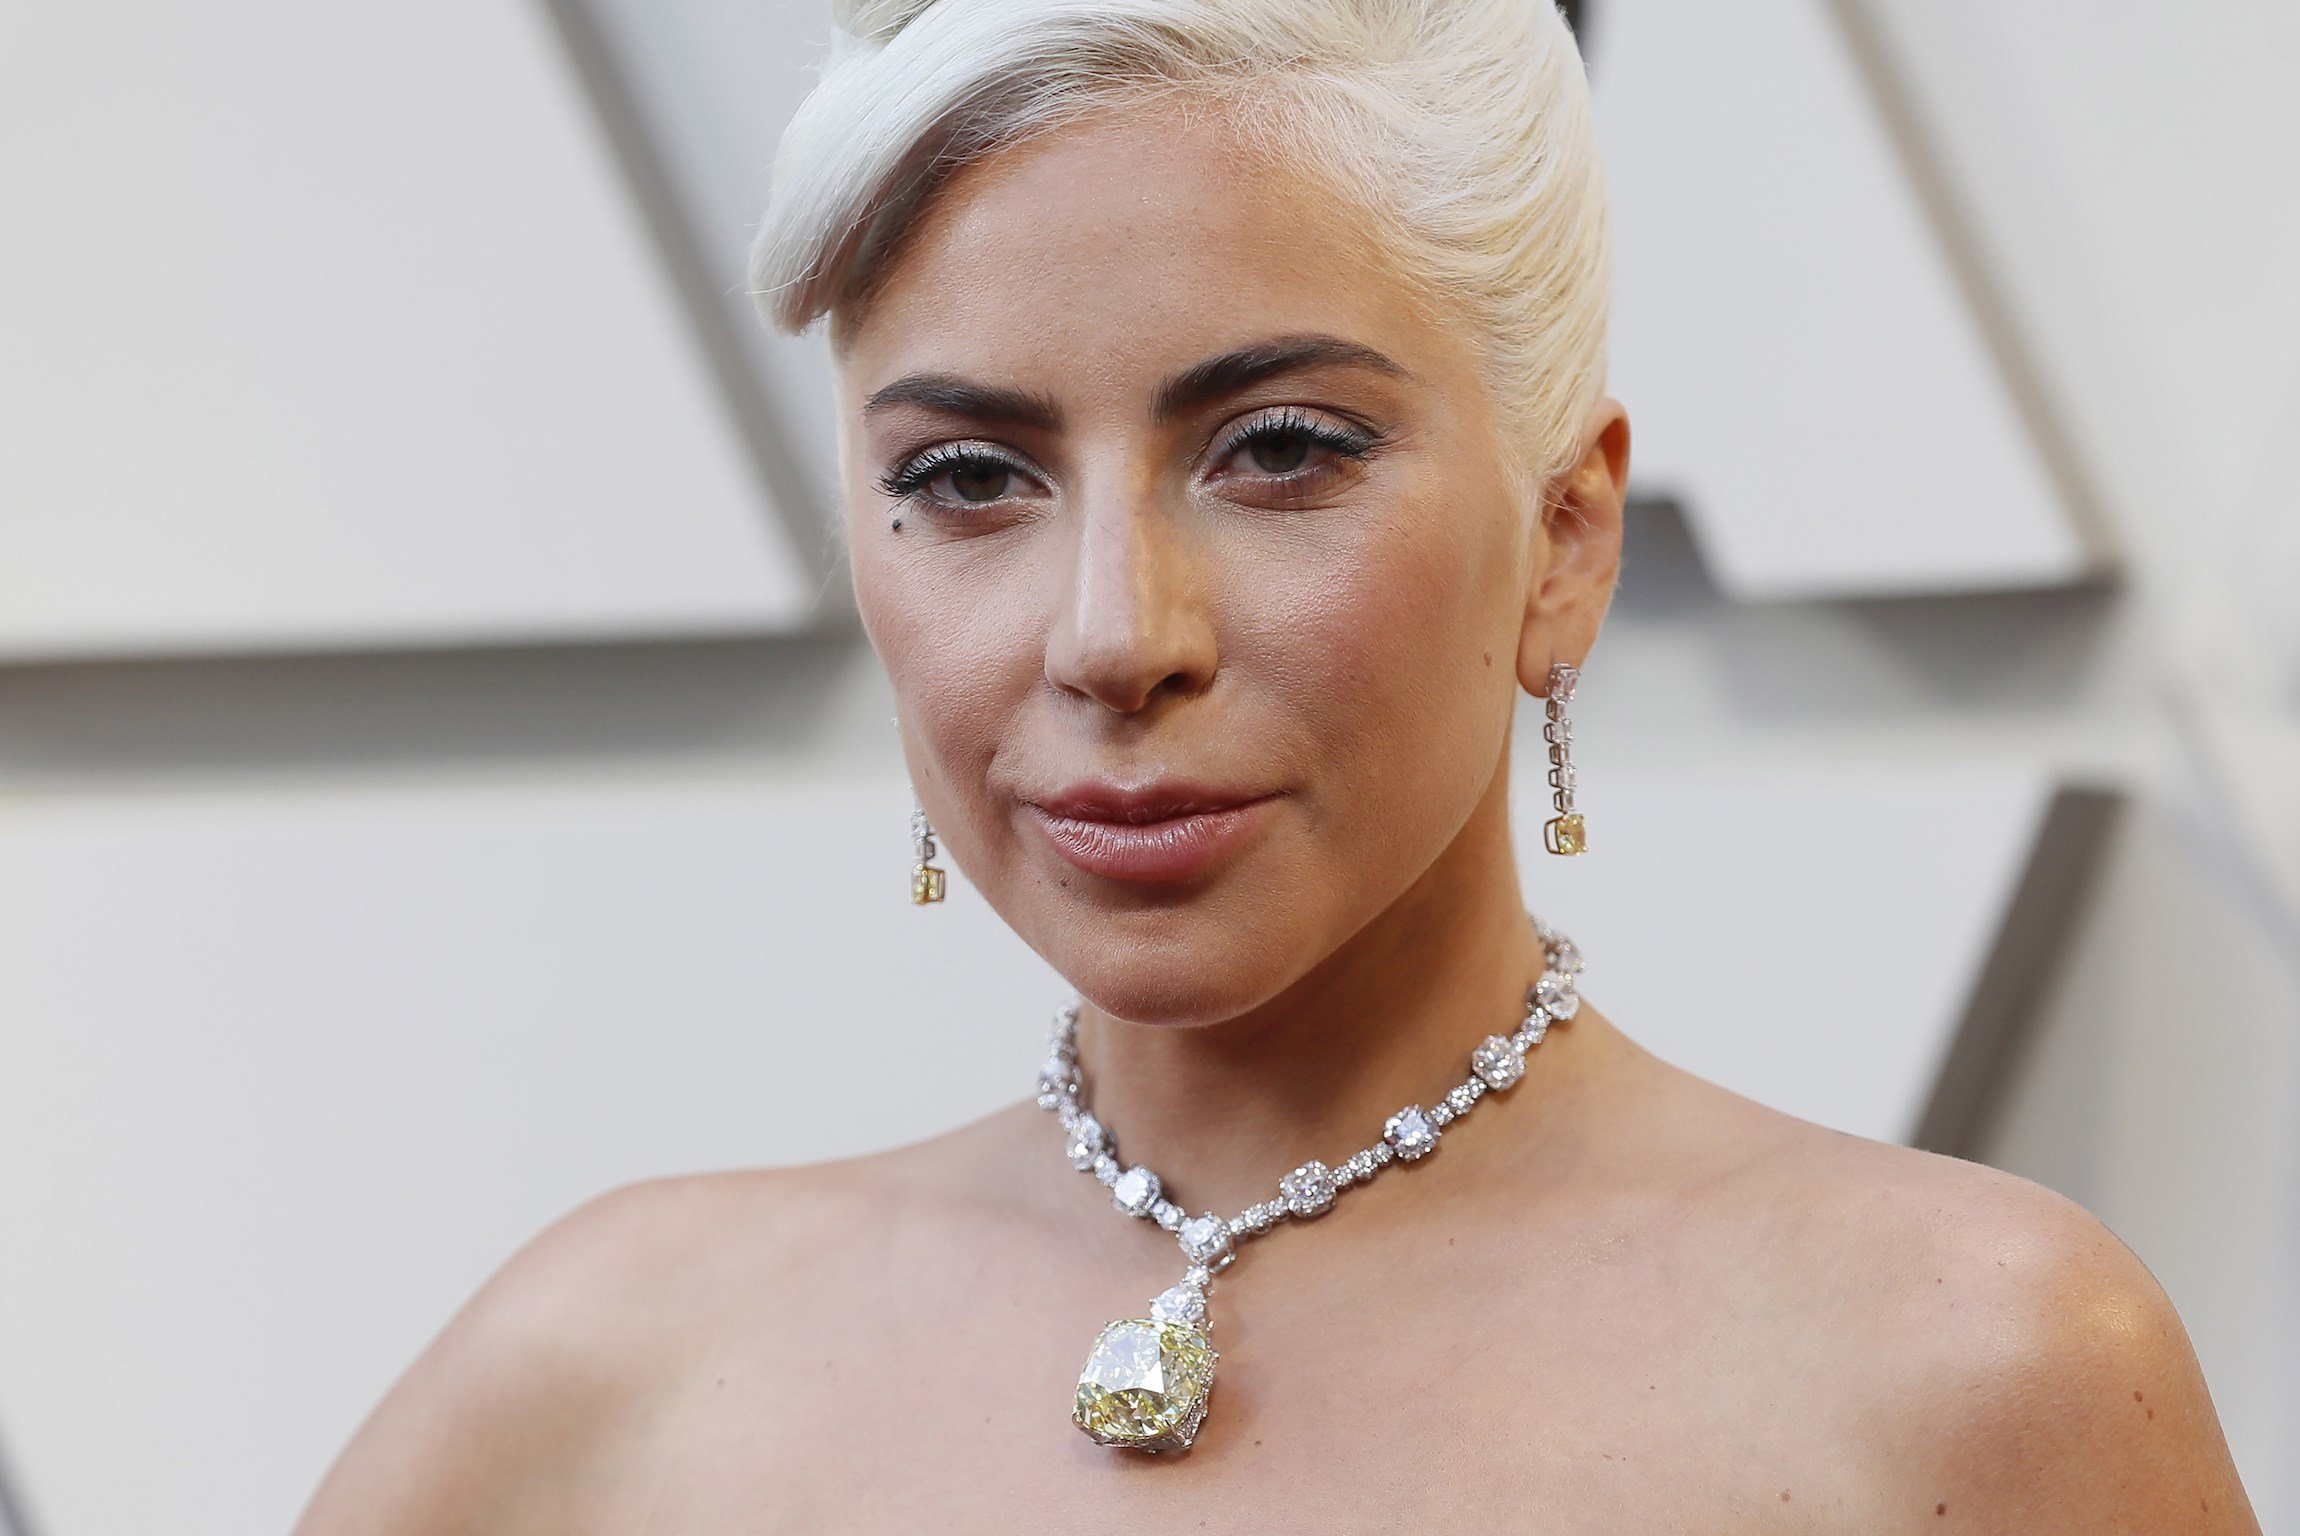 Fotos compromeses de Lady Gaga corren com la pólvora en fòrums: "Tot era mentida?"